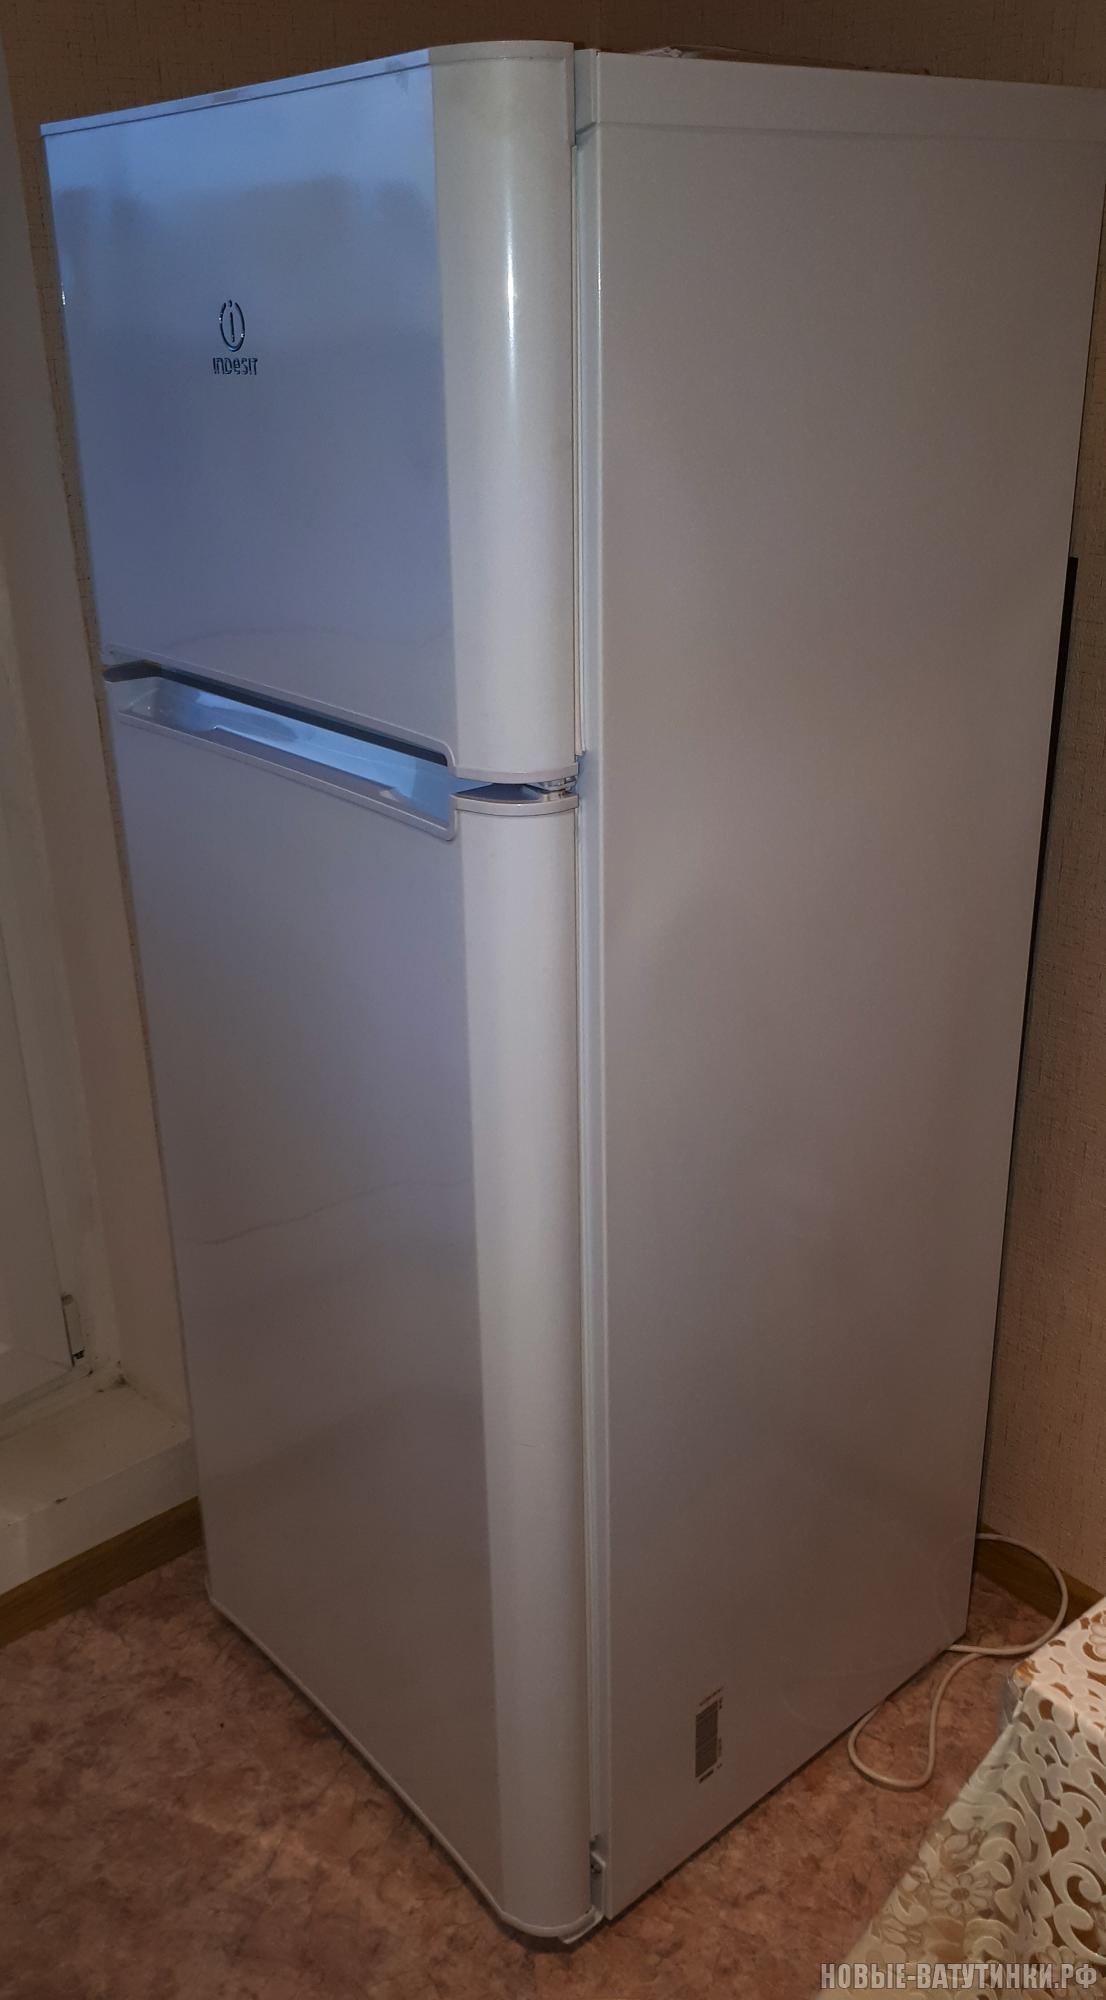 Продам индезит. Холодильник Индезит Tia 16.